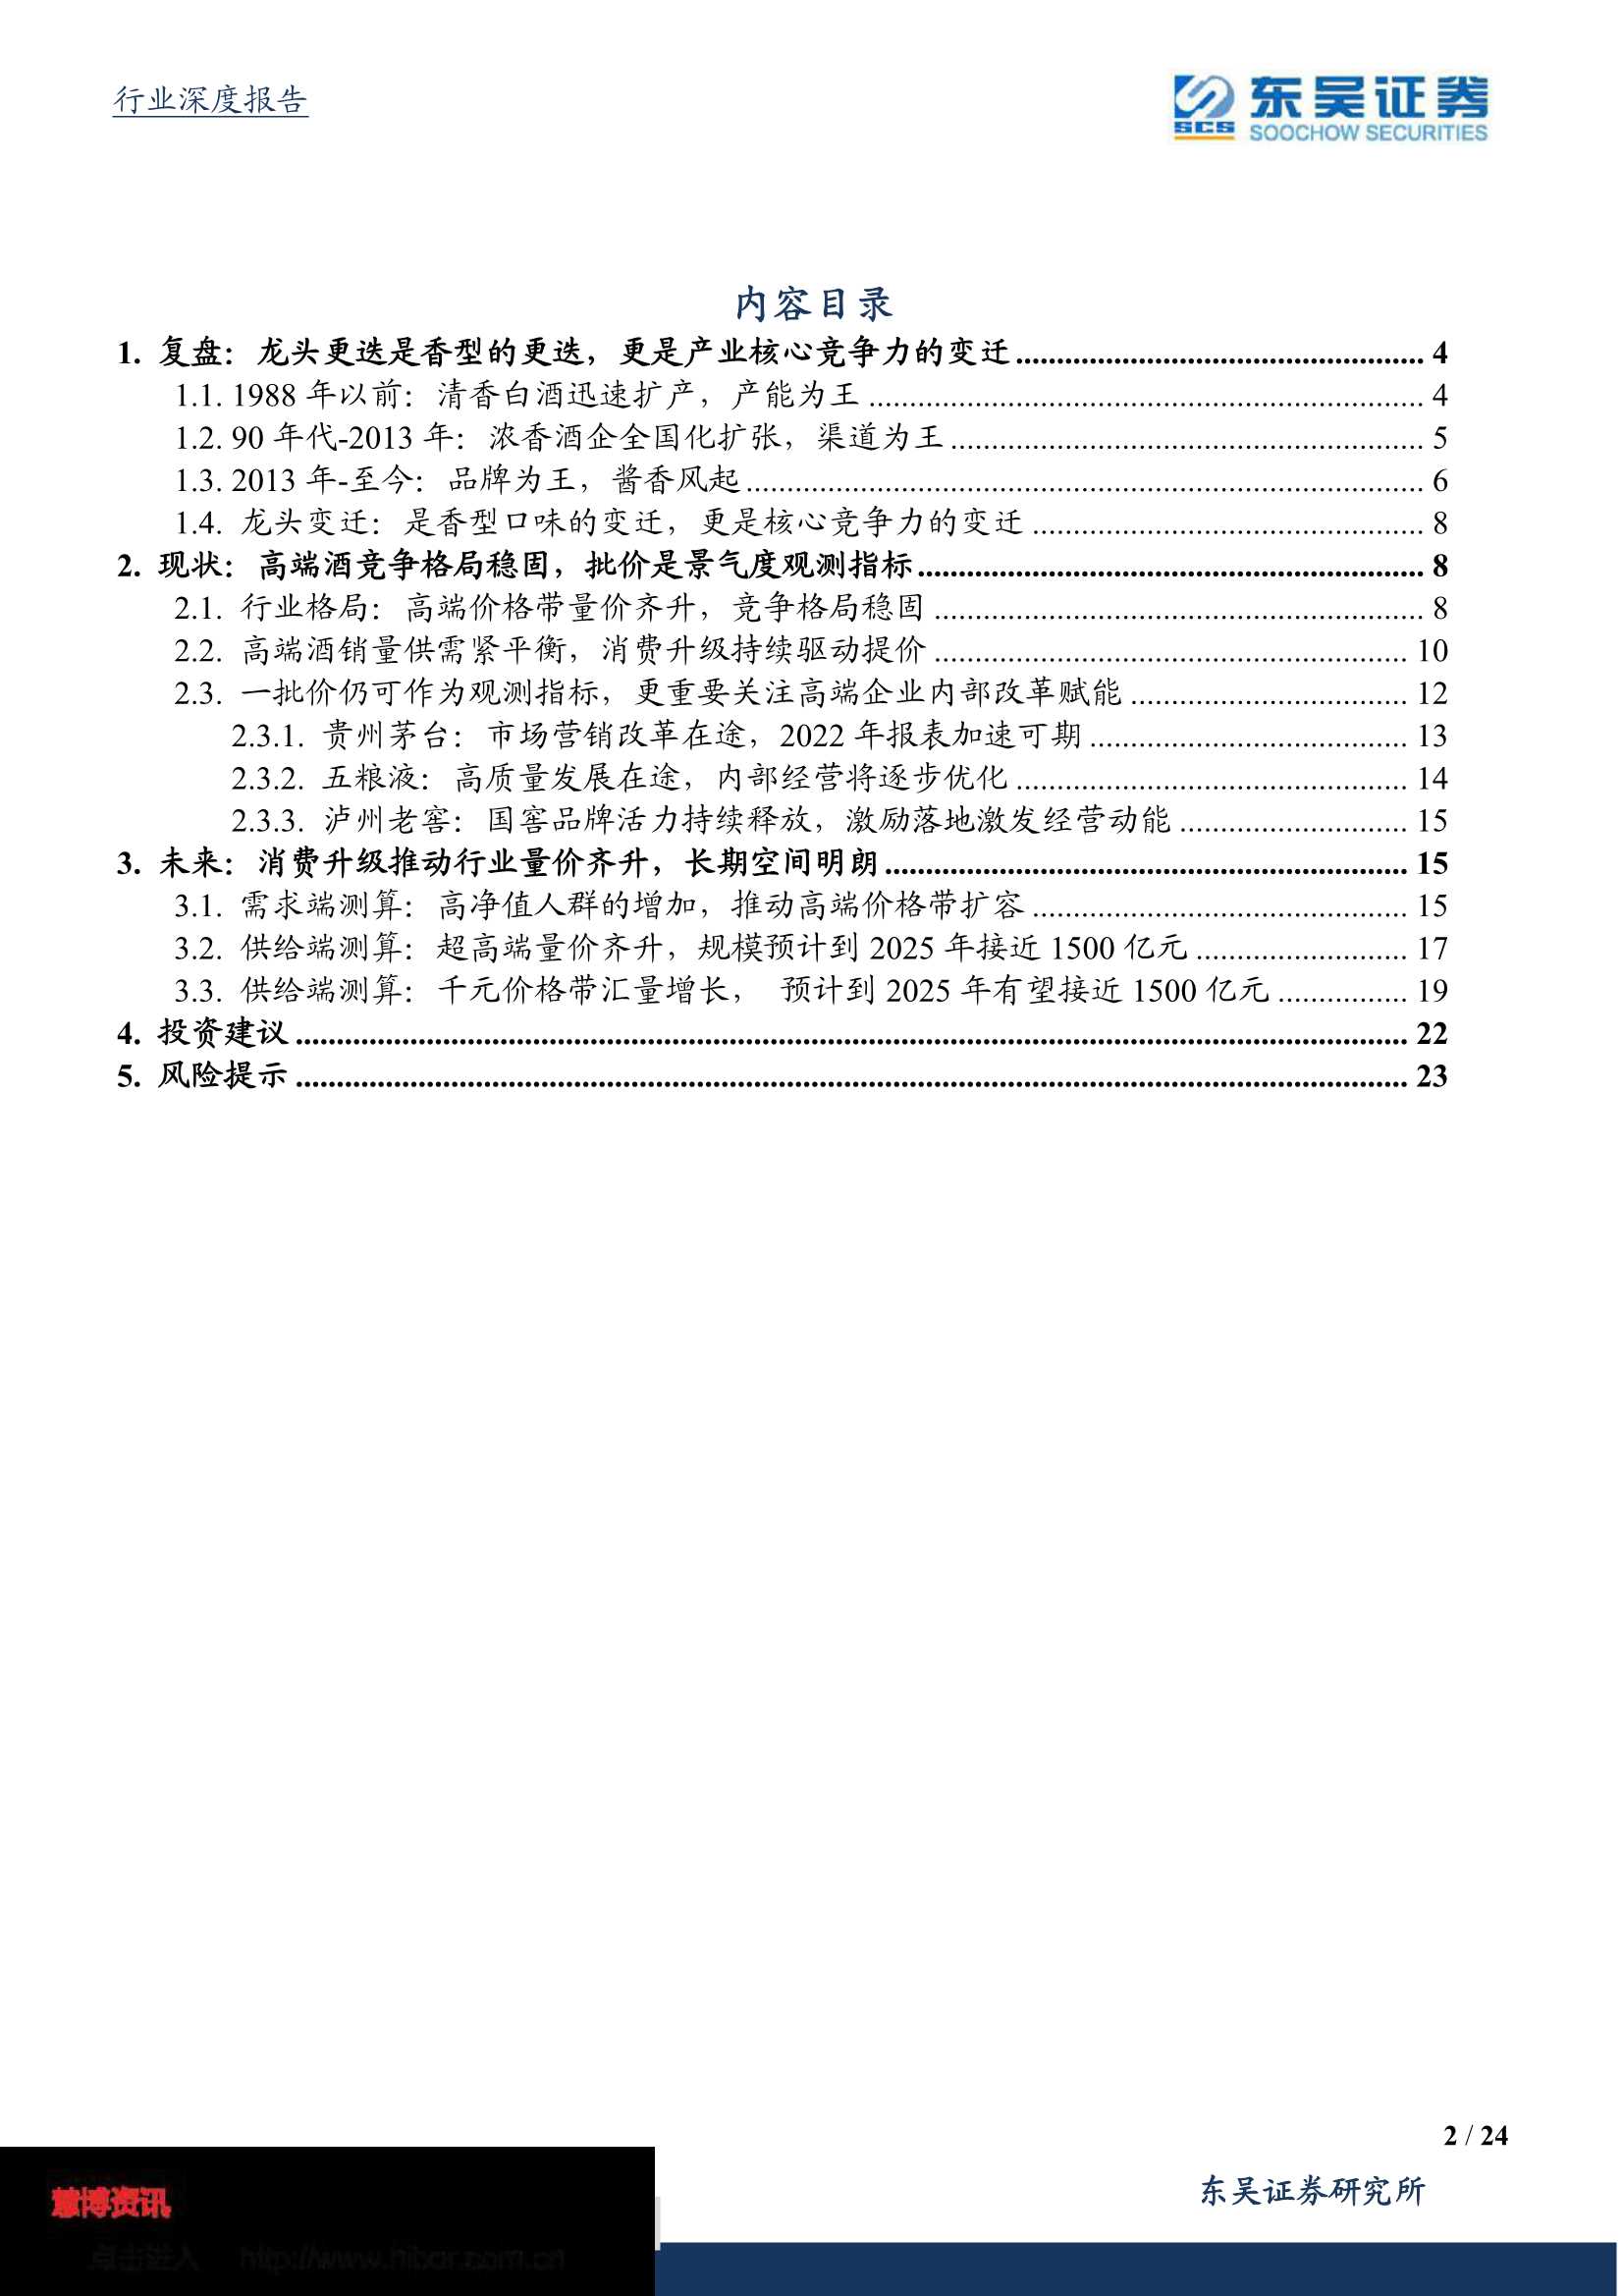 东吴证券-食品饮料行业深度报告：高端酒景气向上，安稳放行舟-20220322-24页